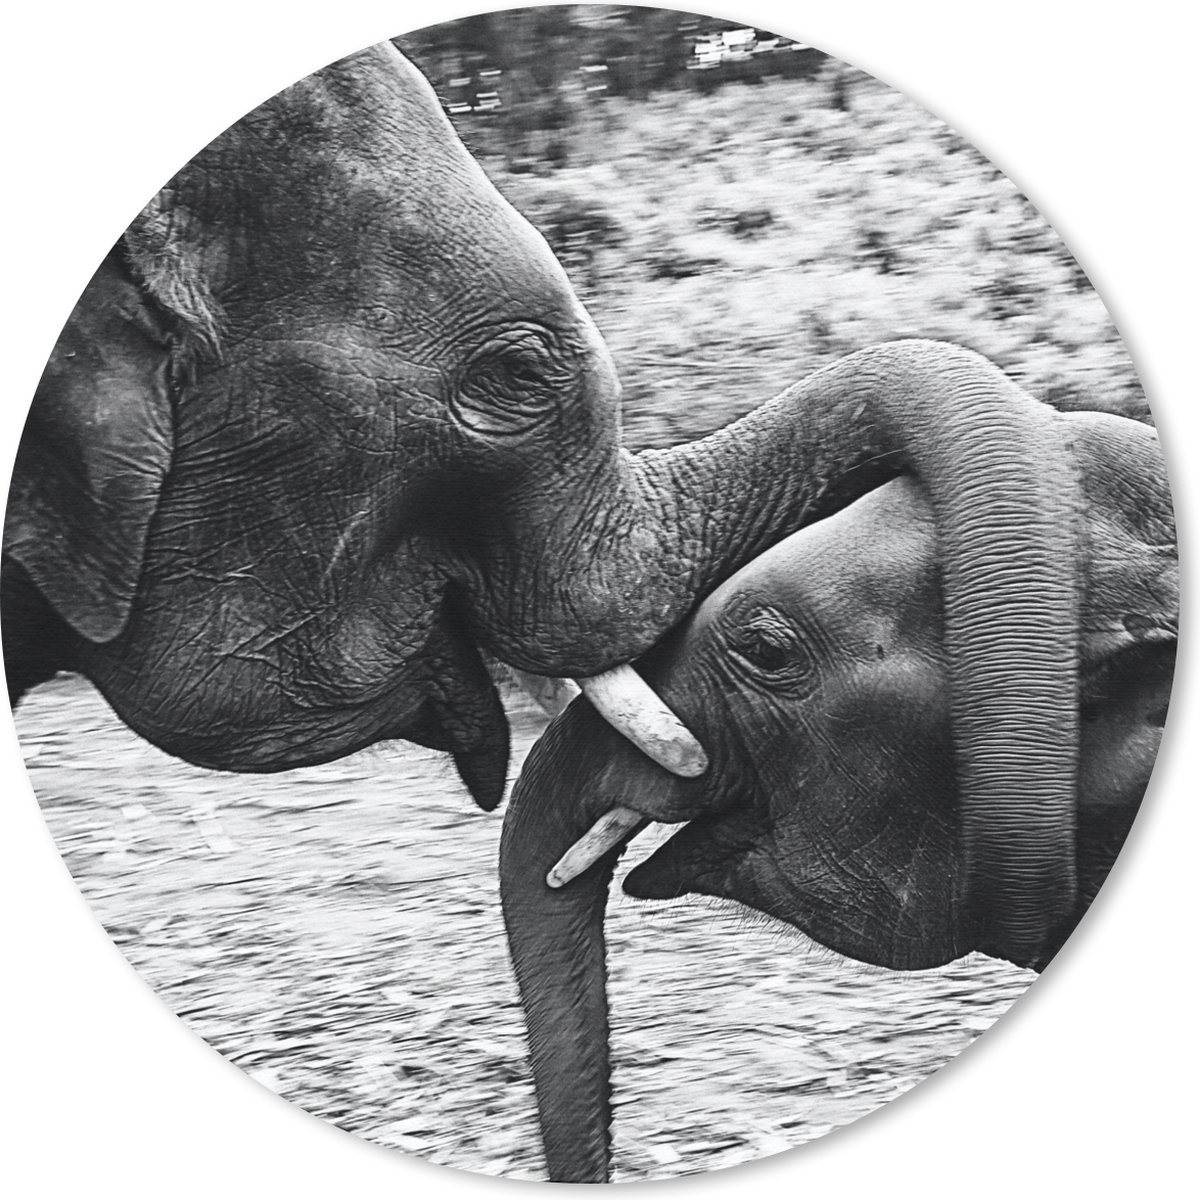 Muismat - Mousepad - Rond - Knuffelende olifanten in zwart-wit - 50x50 cm - Ronde muismat